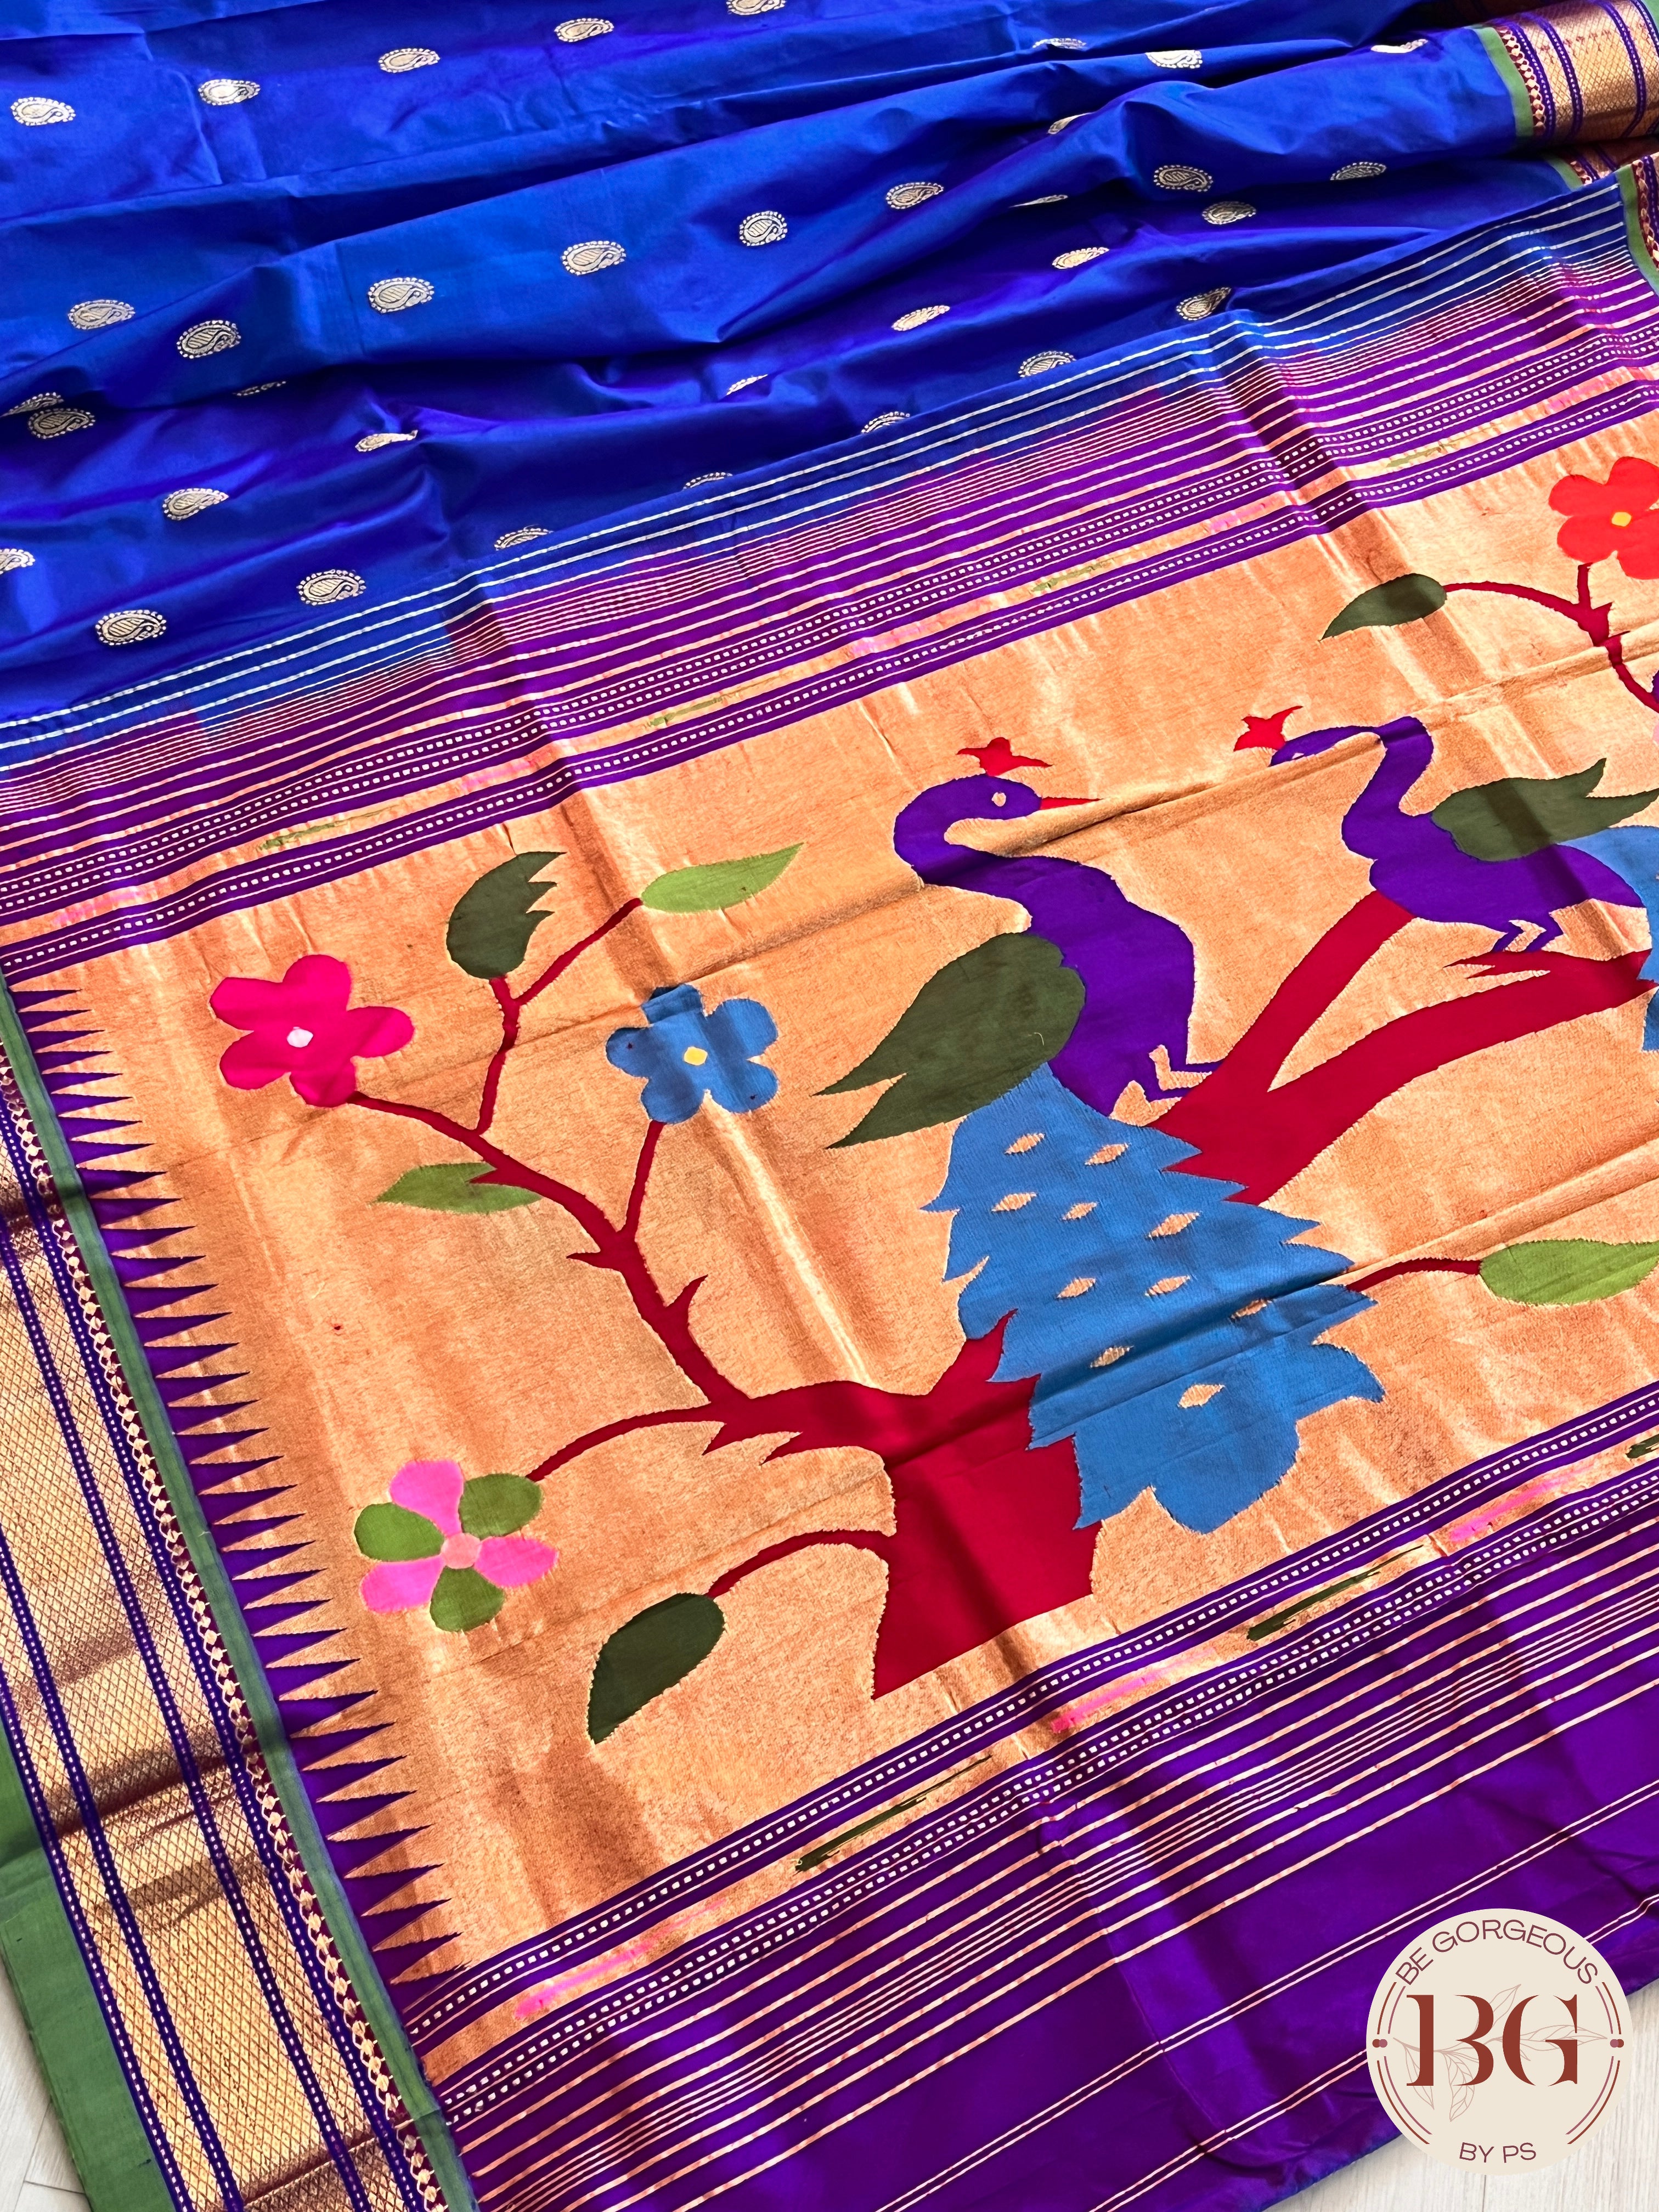 Paithani Saree Blouse Designs Banarasi Saree Pattern New